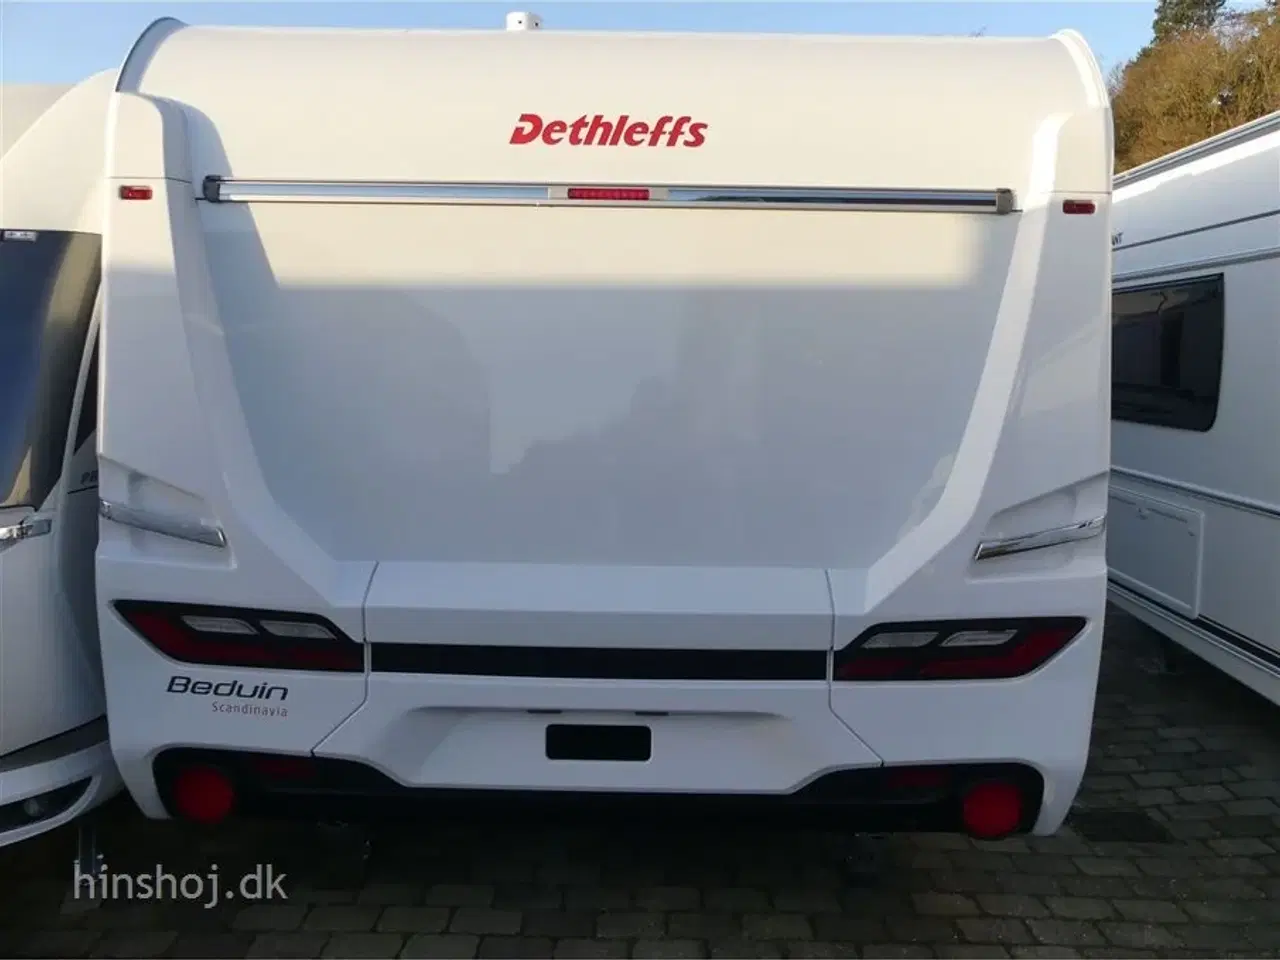 Billede 11 - 2022 - Dethleffs Beduin Scandinavia 540 QMK   Rigtig lækker køjevogn med Alde centralvarme fra Hinshøj Caravan A/S